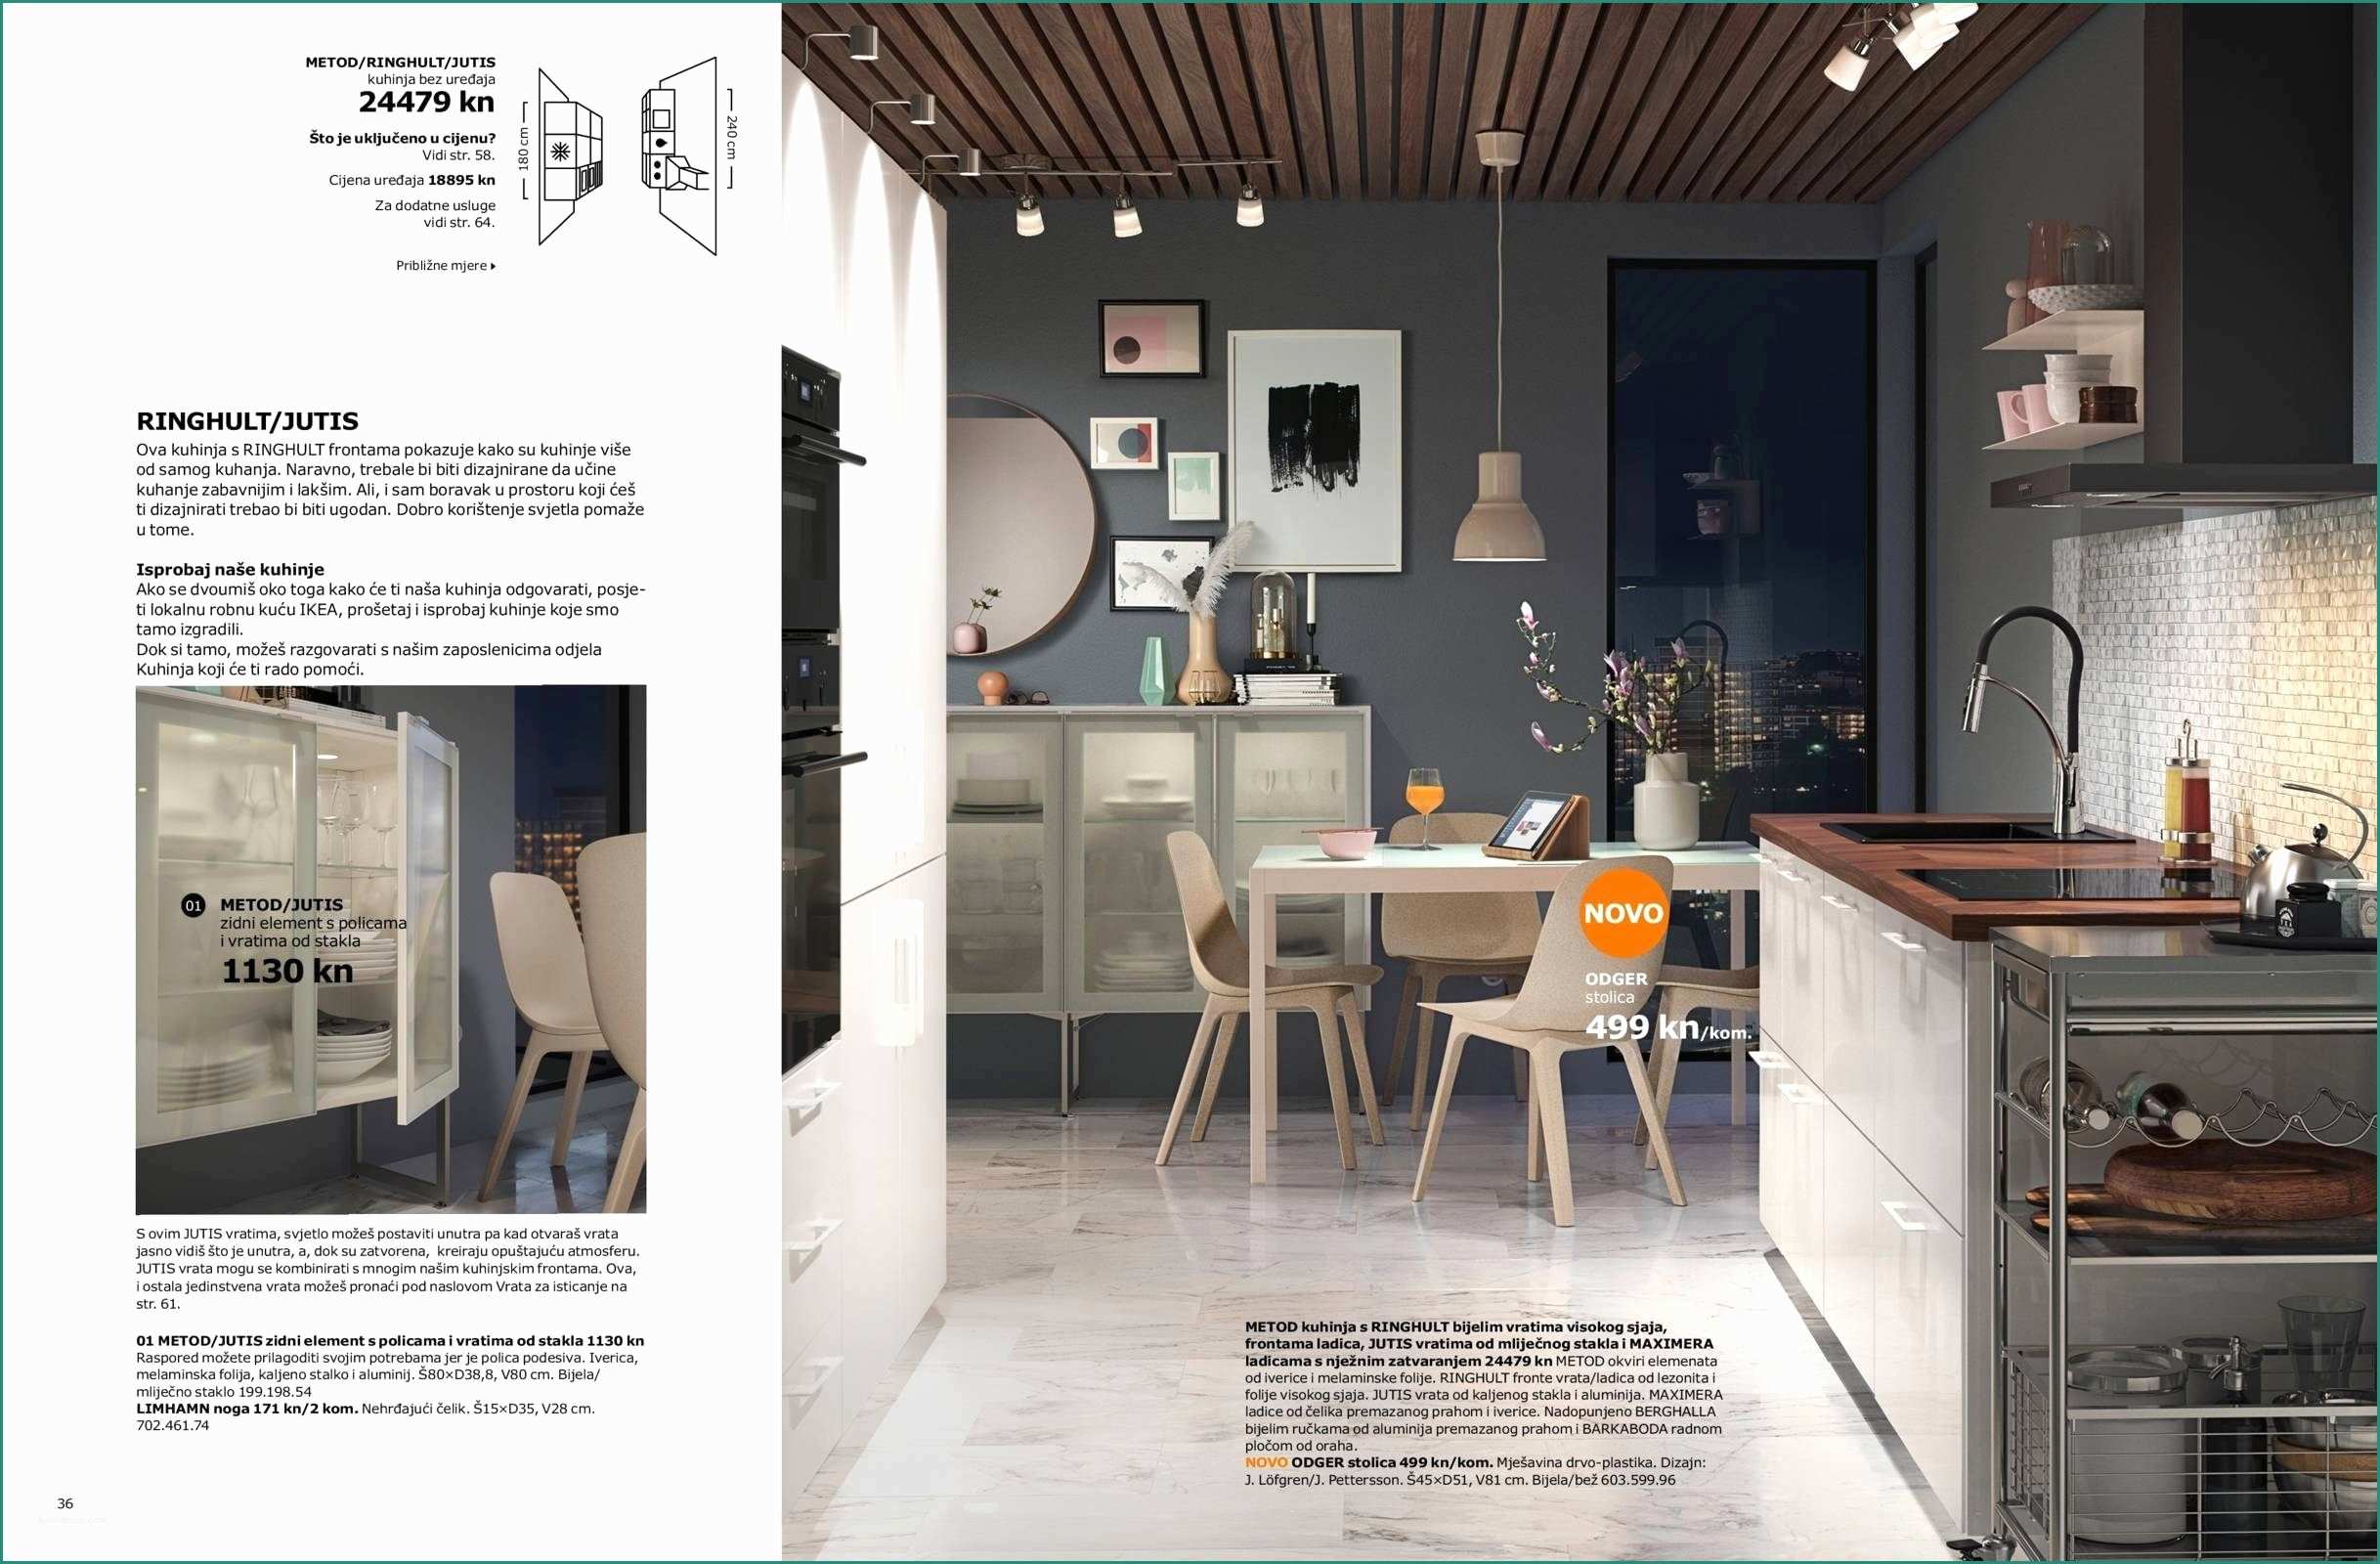 23 Reference Porte A Libro Ikea – Design Per La Casa